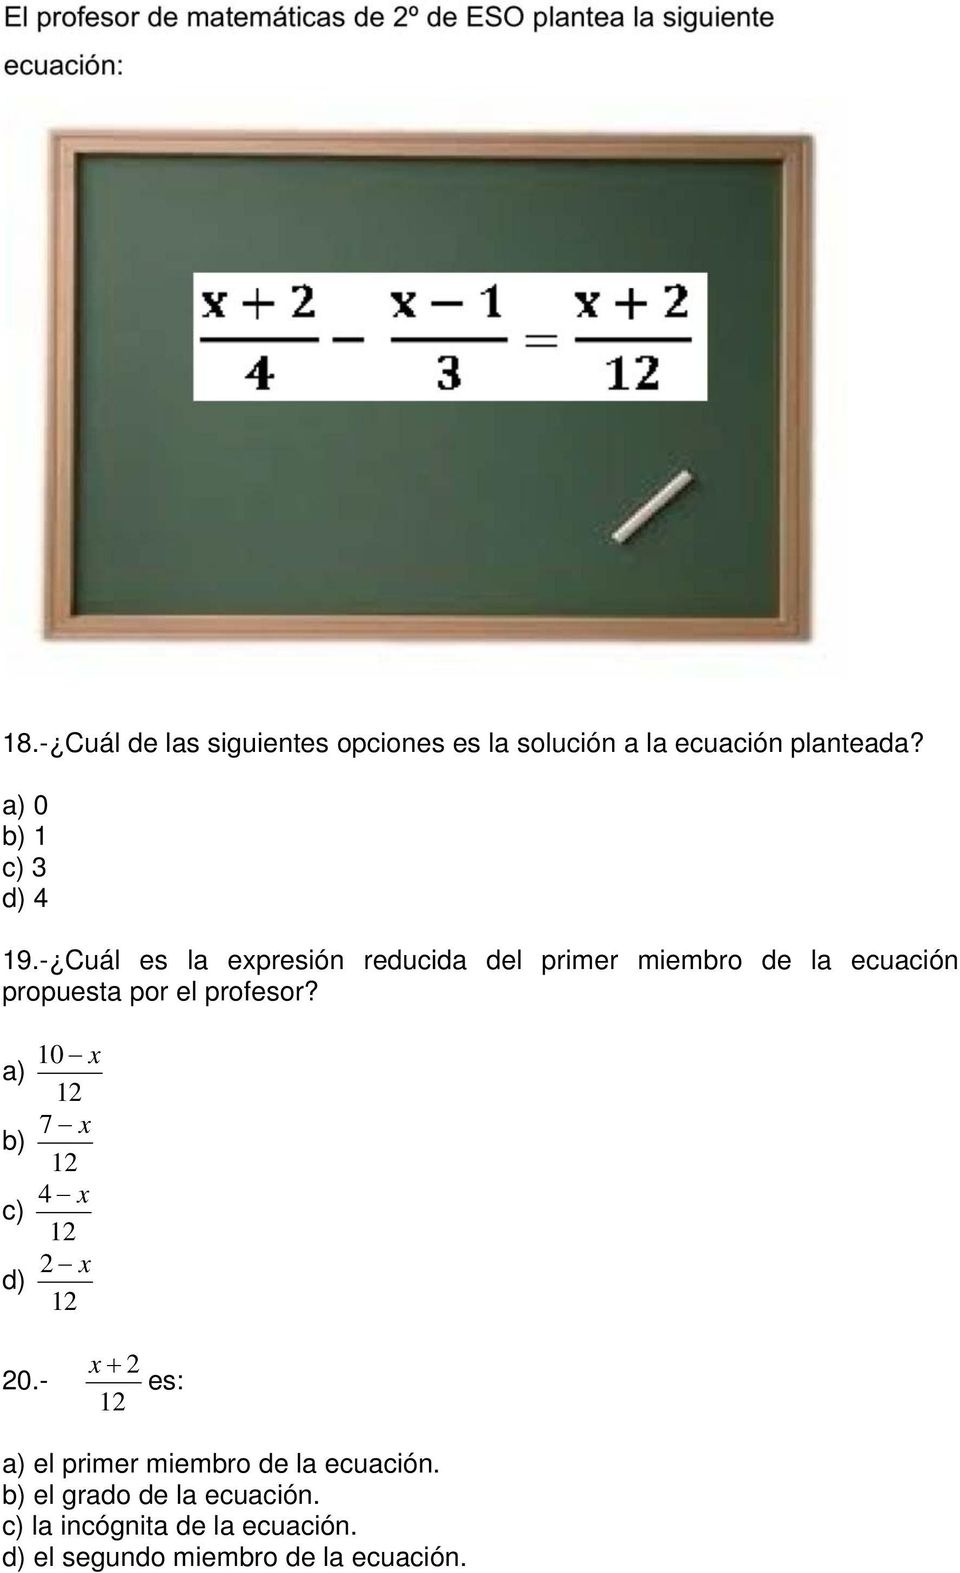 - Cuál es la expresión reducida del primer miembro de la ecuación propuesta por el profesor?